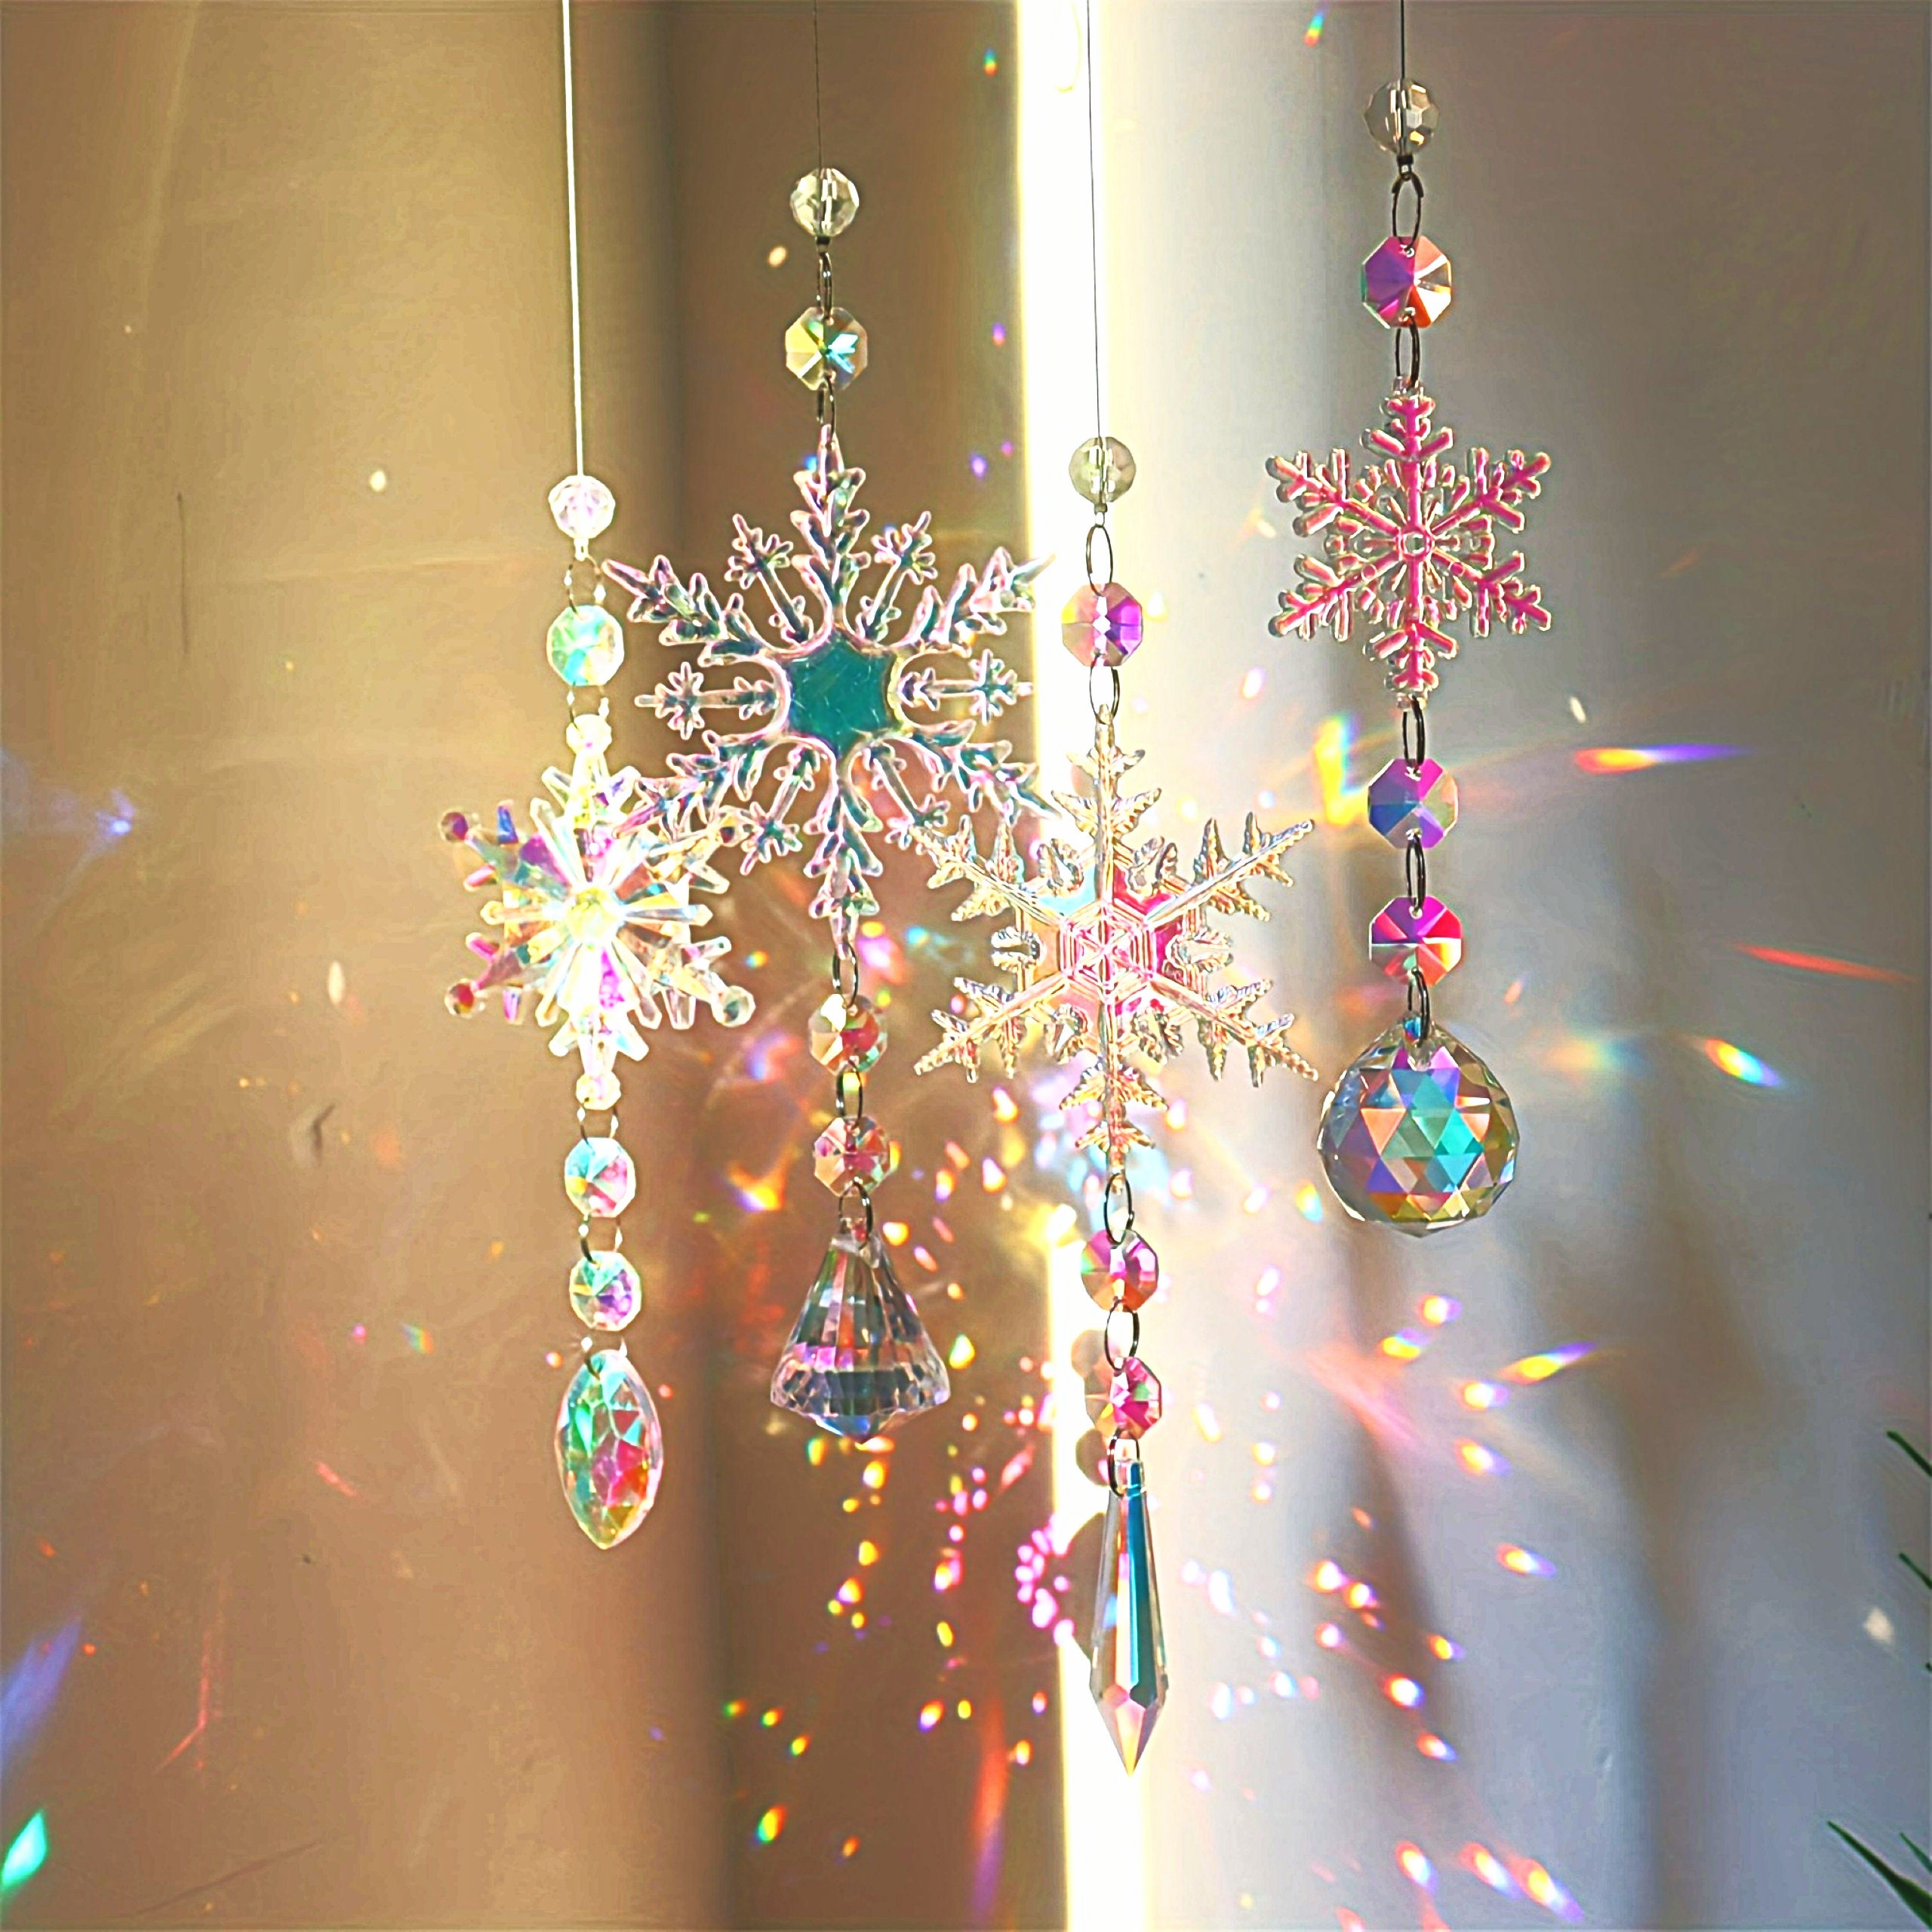 Attrape-Soleil, icyant Attrape-rêves en Cristal Suspendus de Prisme de  Boule de Verre Transparent Multicolore pour la Maison la fenêtre de  Jardin,Cadeaux pour filles